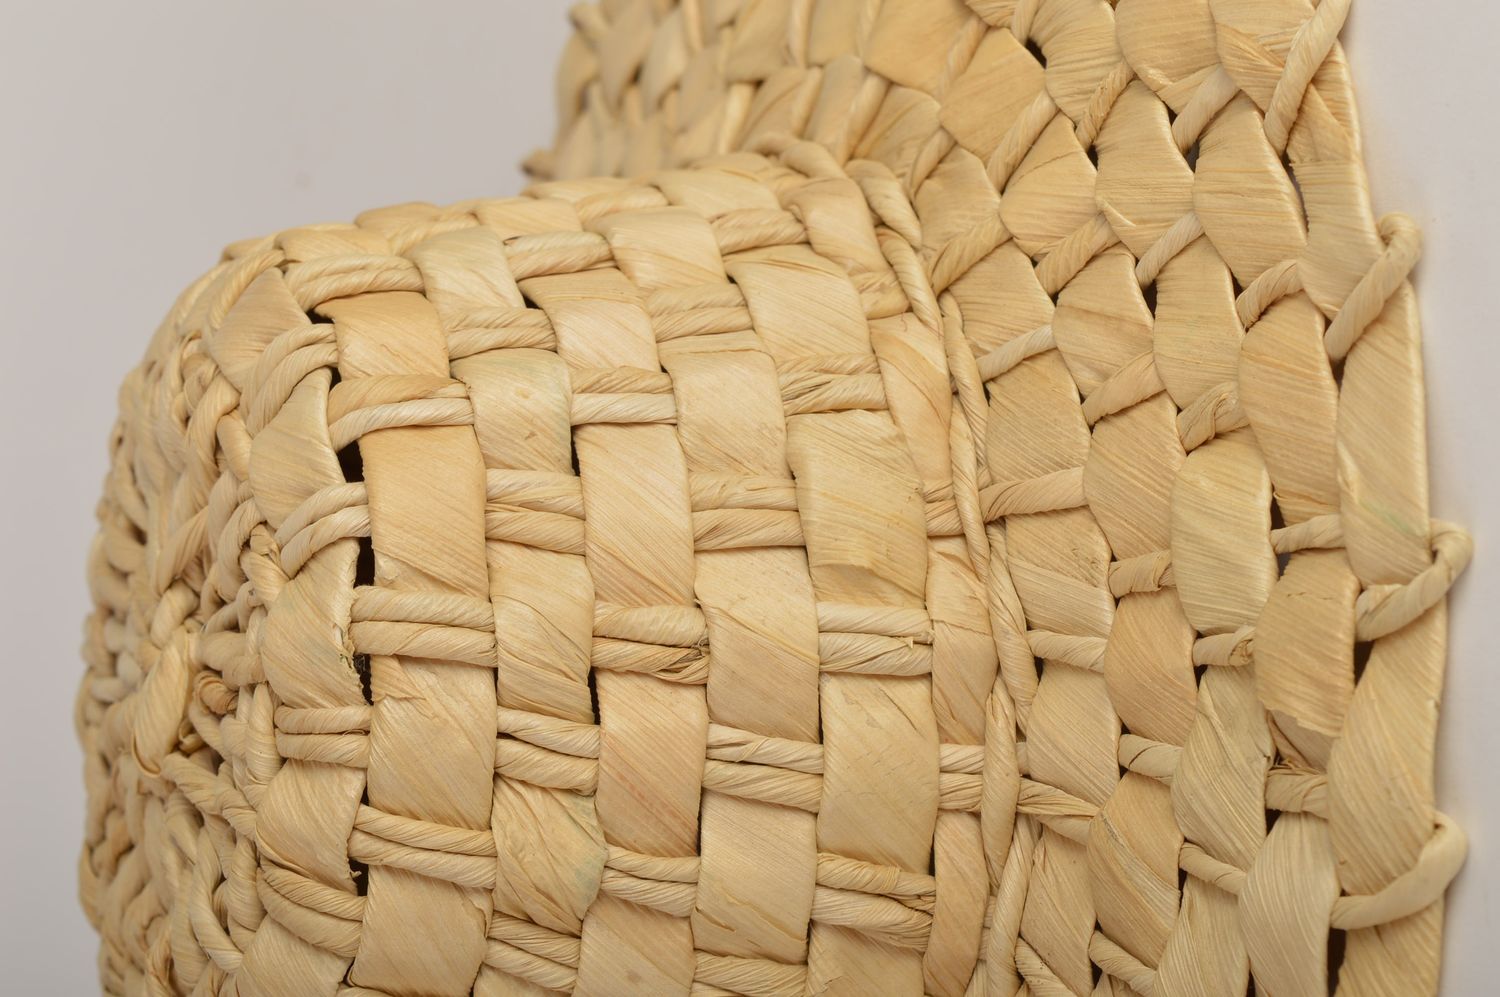 Женская шляпка ручной работы плетеная шляпа из кукурузных листьев модная шляпка фото 5